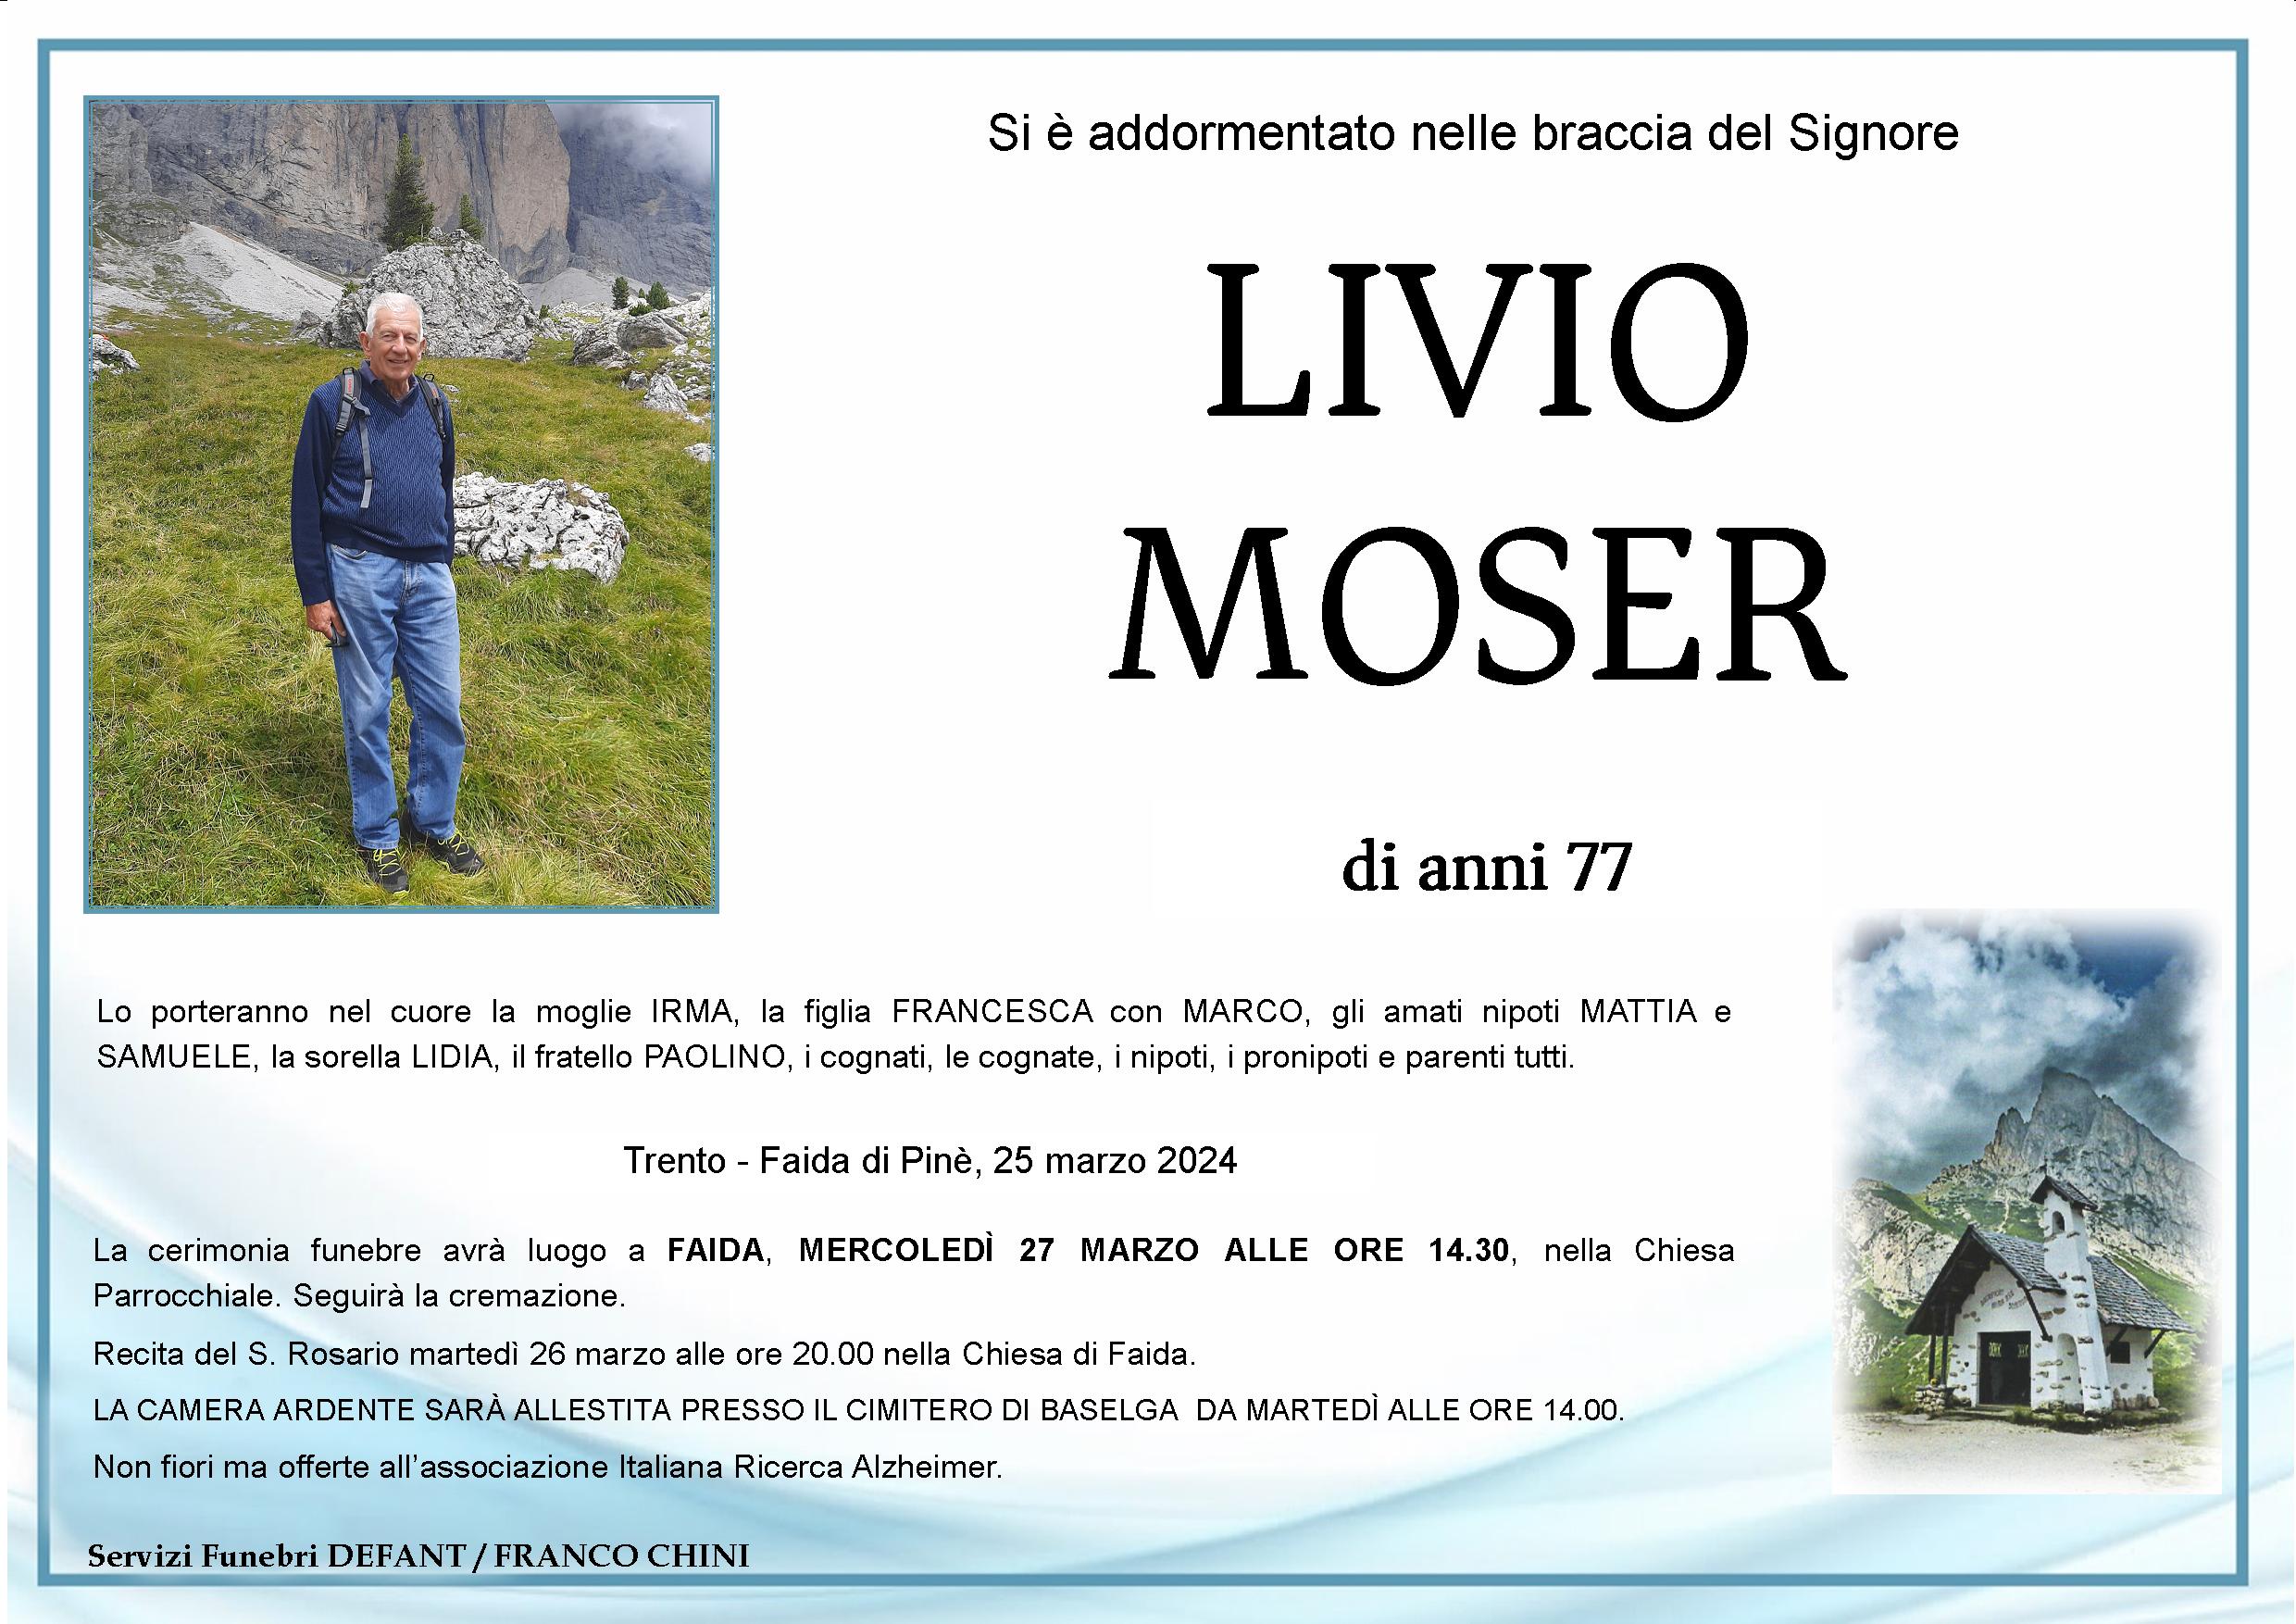 Livio Moser